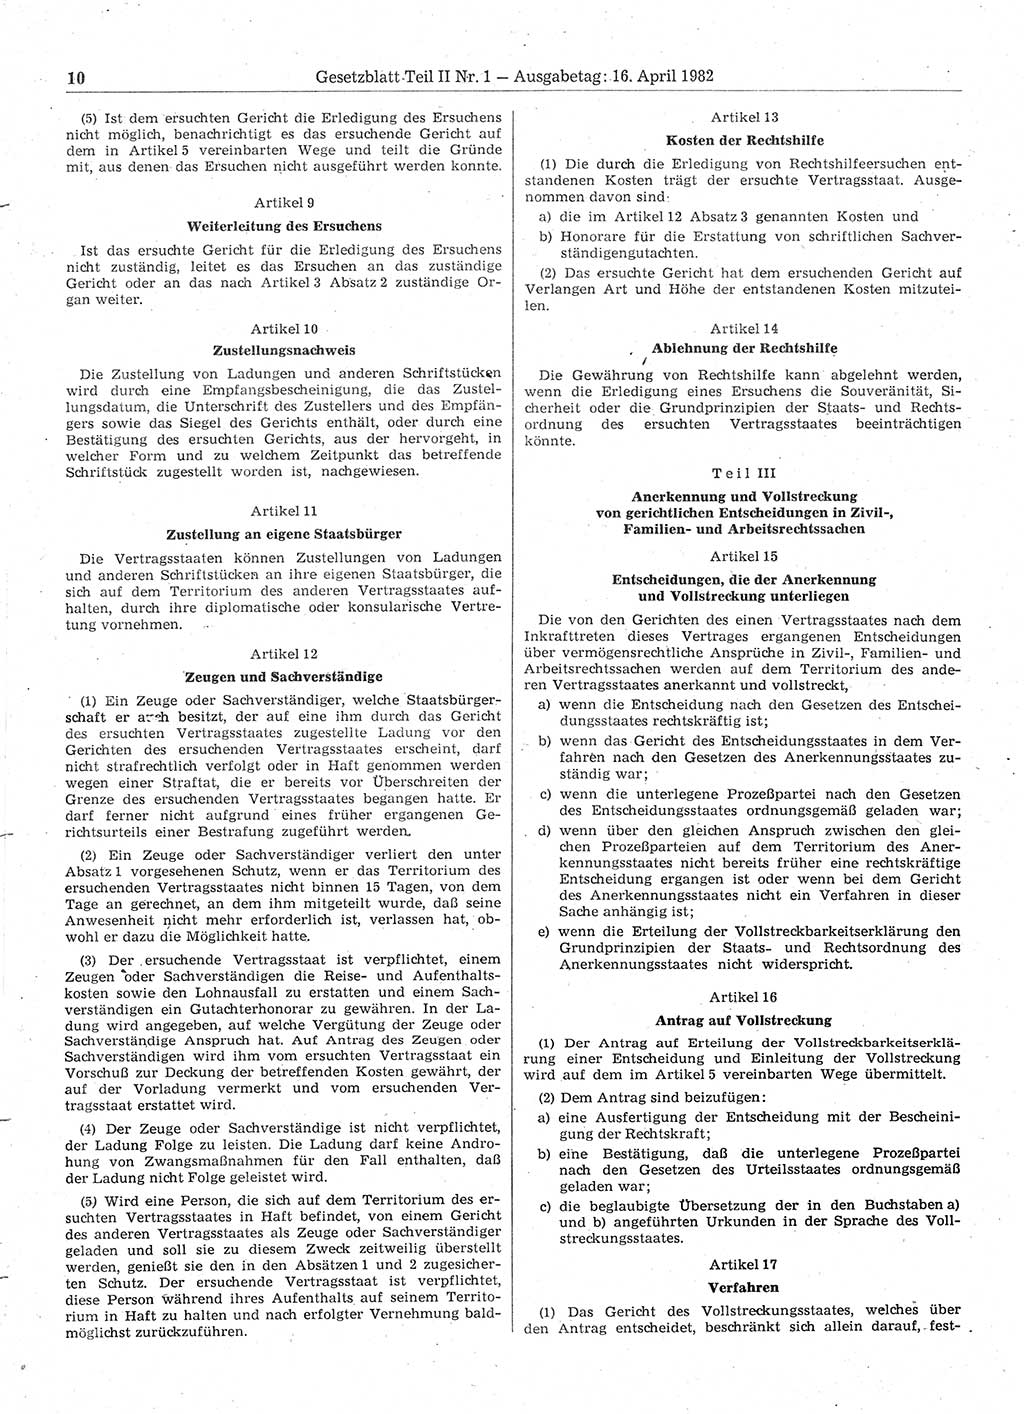 Gesetzblatt (GBl.) der Deutschen Demokratischen Republik (DDR) Teil ⅠⅠ 1982, Seite 10 (GBl. DDR ⅠⅠ 1982, S. 10)